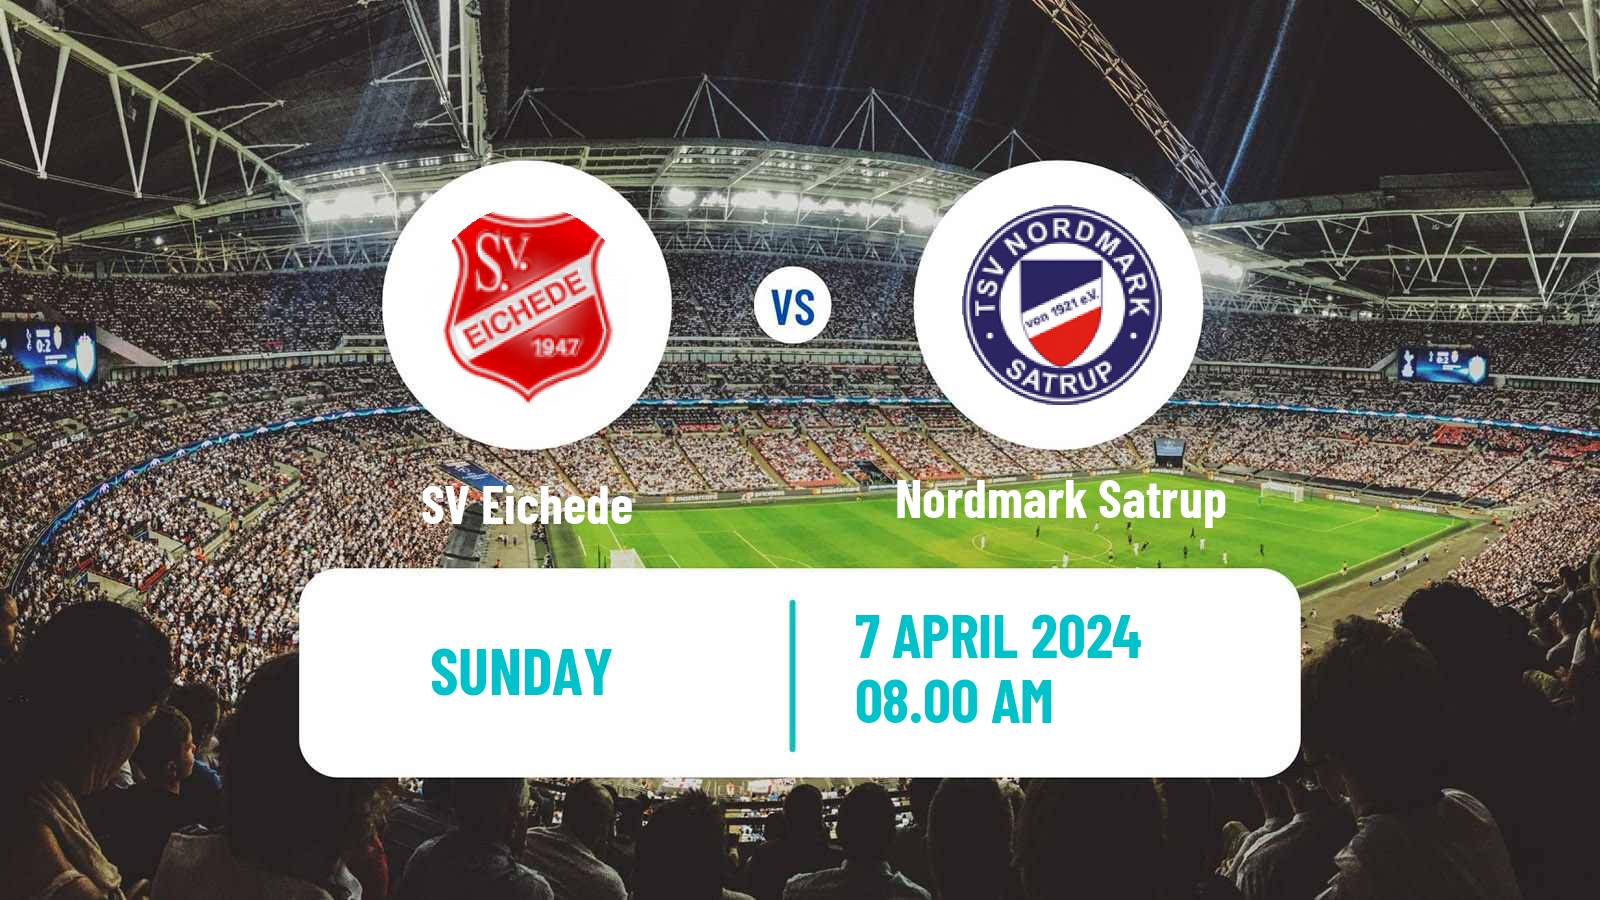 Soccer German Oberliga Schleswig-Holstein Eichede - Nordmark Satrup